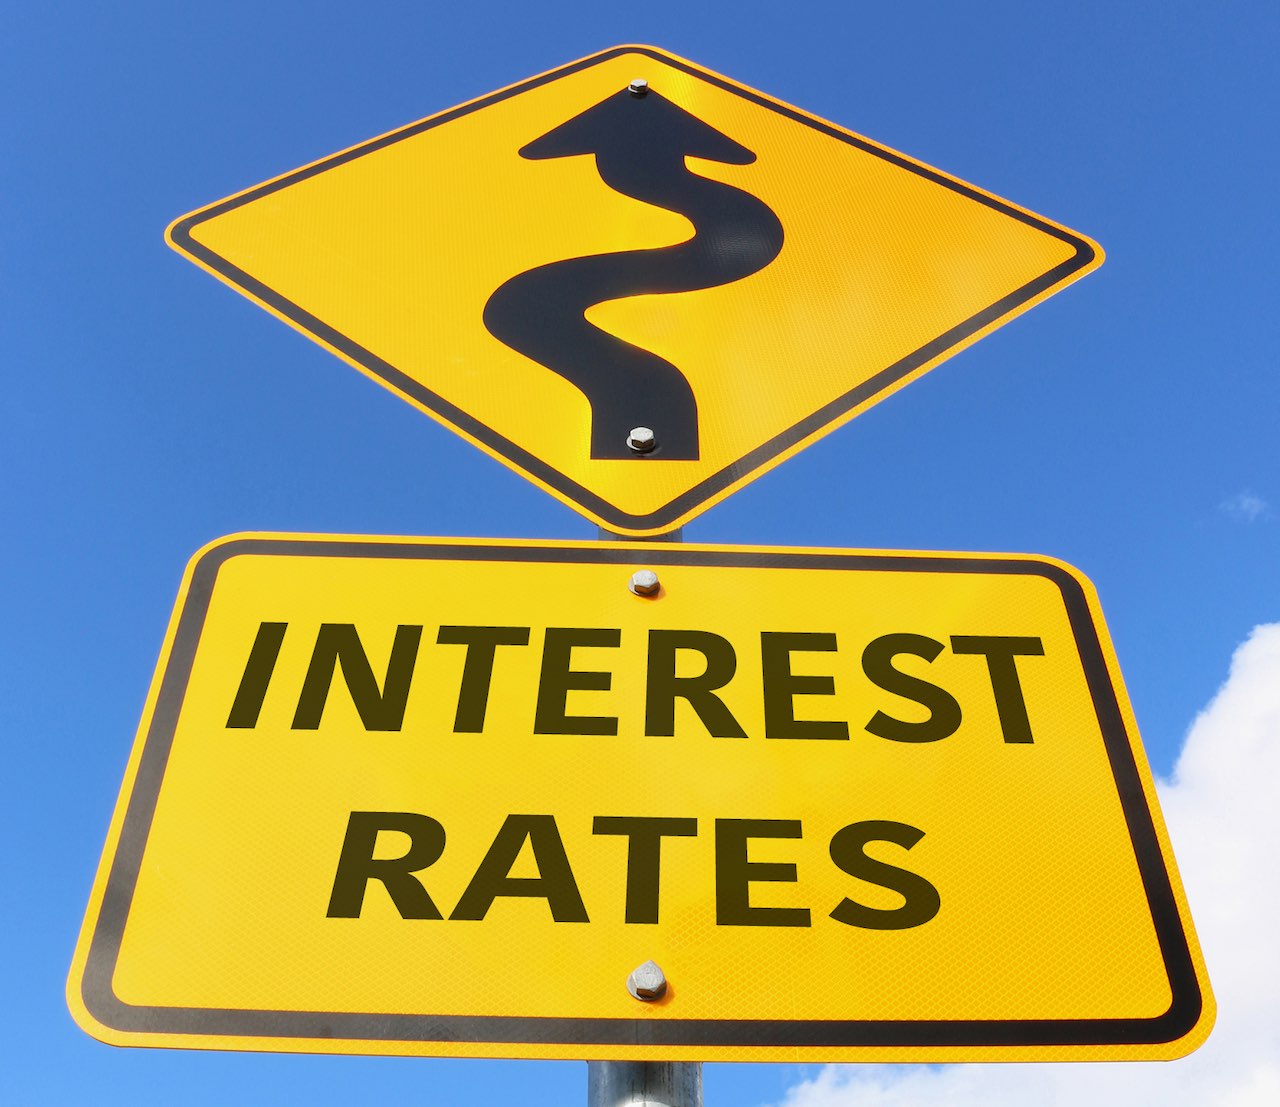 Verkehrsschild mit dem Schriftzug "interest rates" und einem Pfeil nach oben